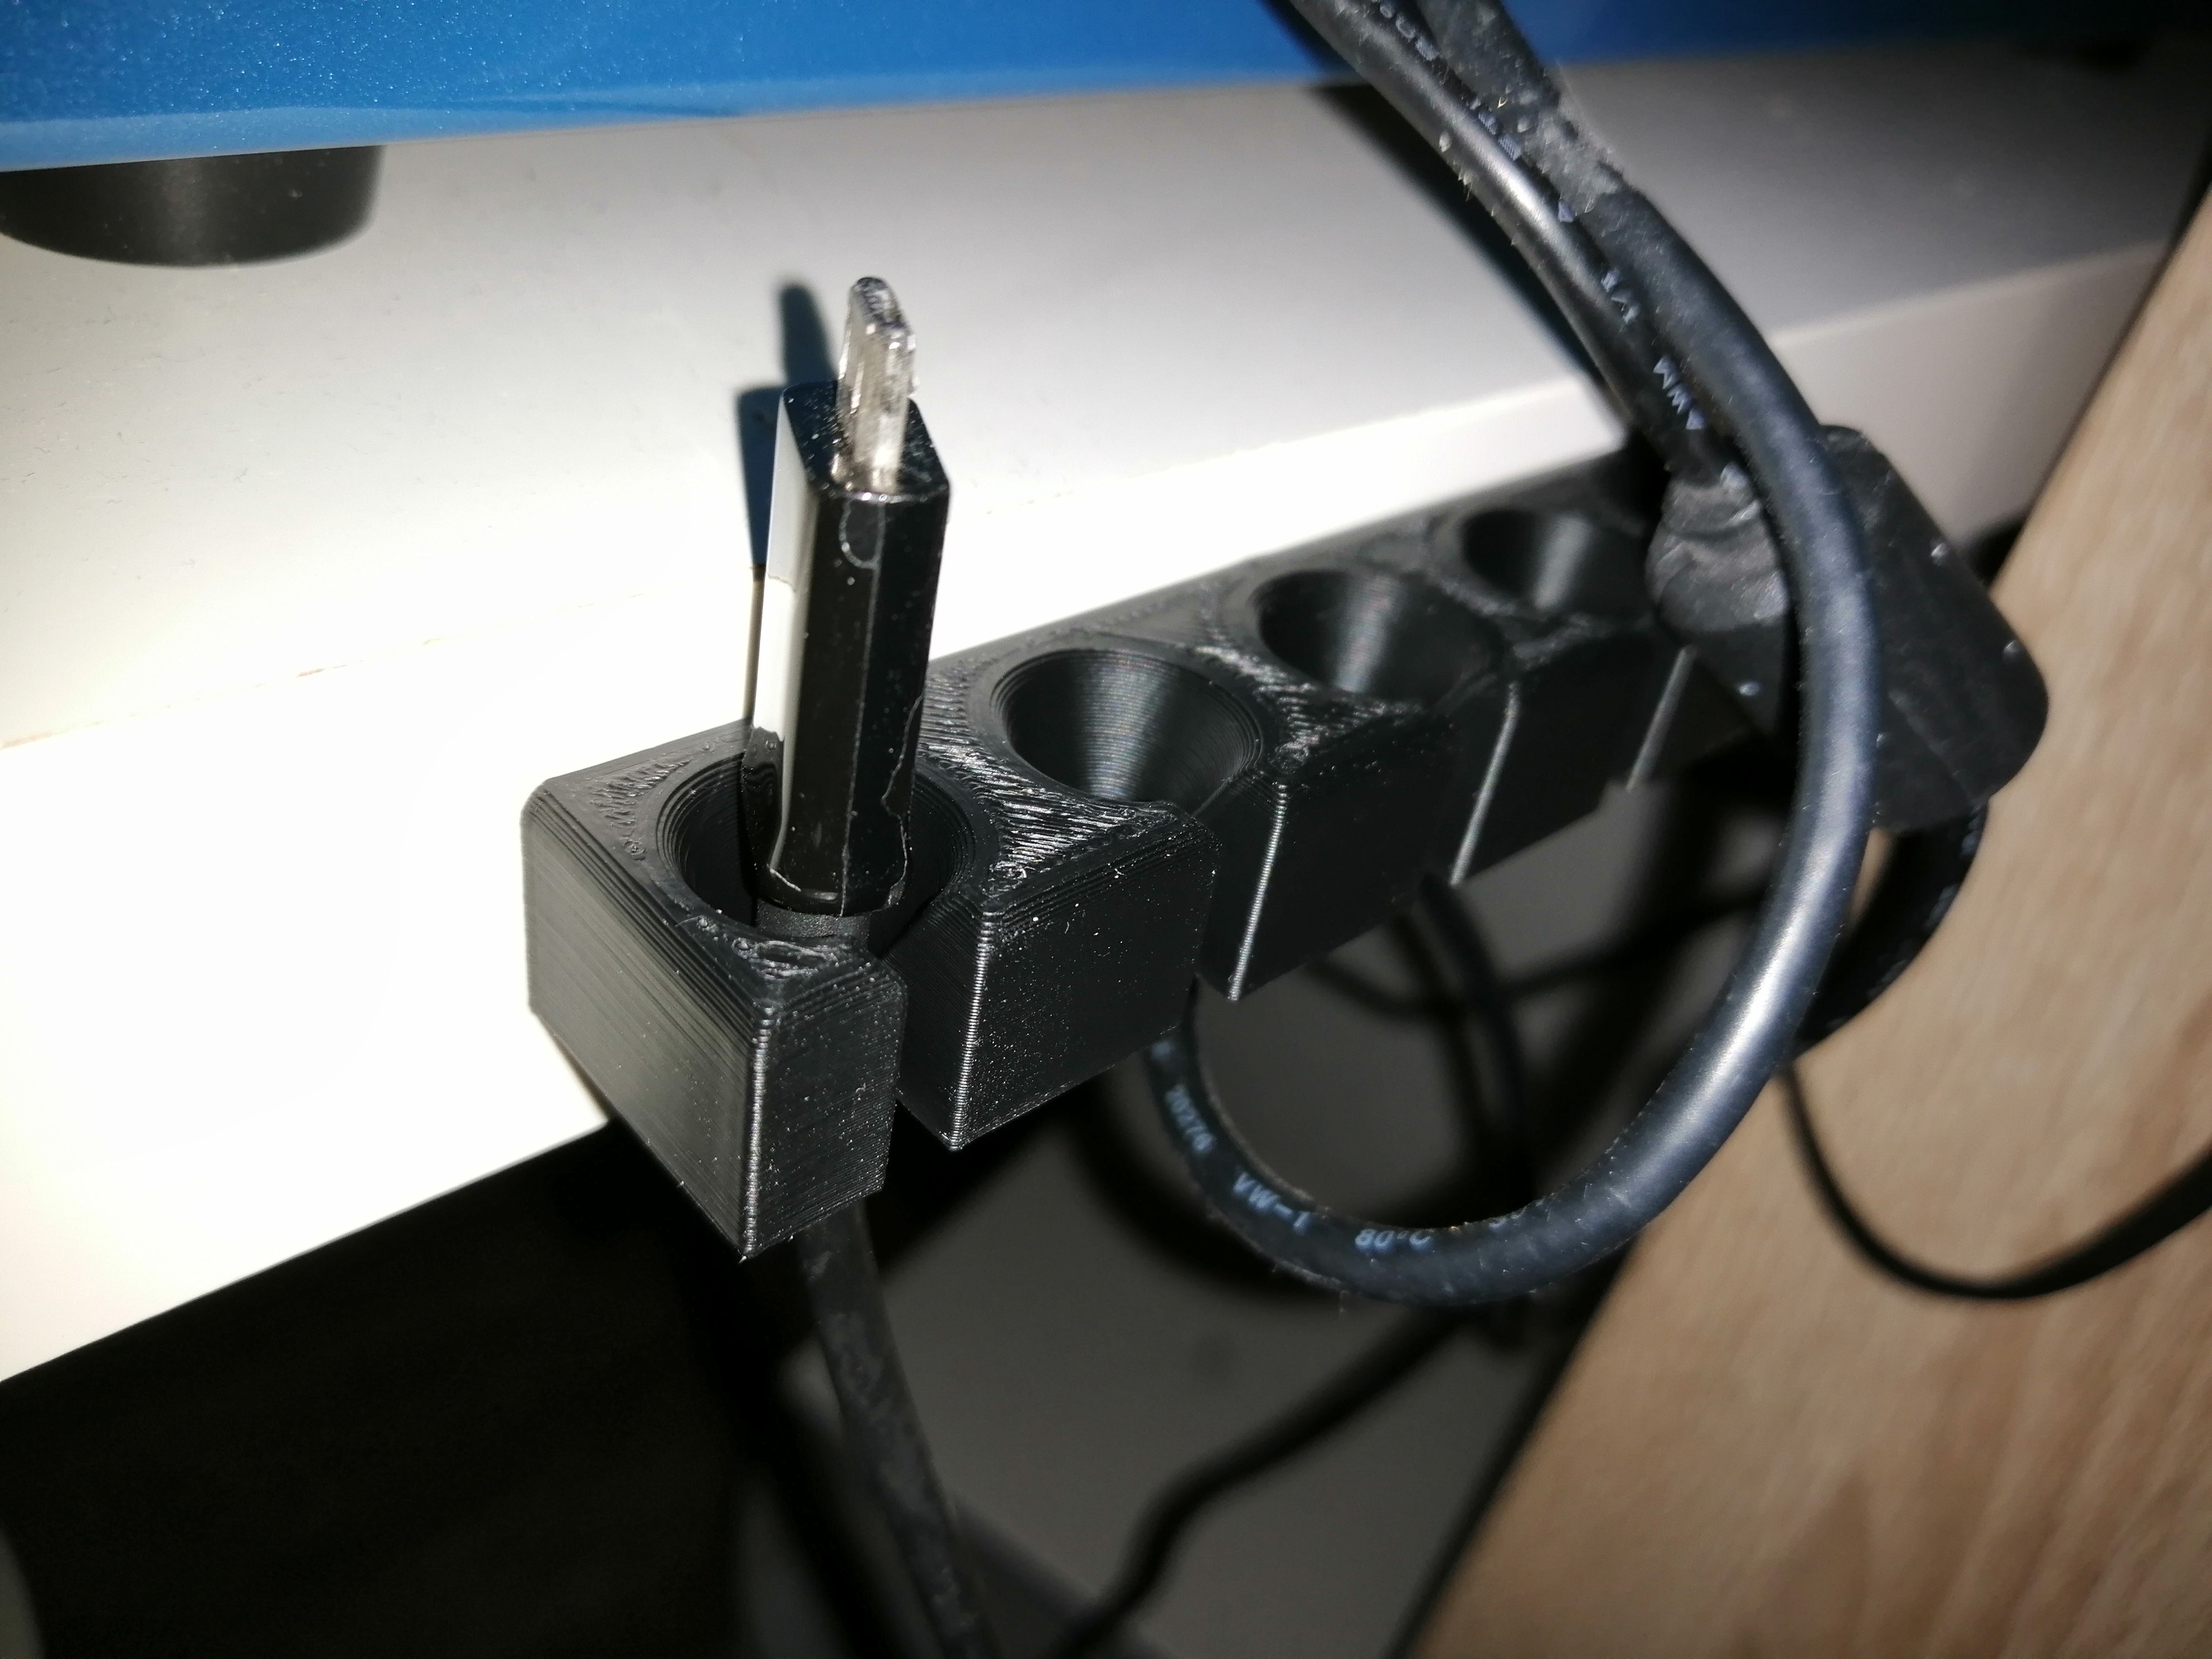 Soporte para cables USB para organizar los cables